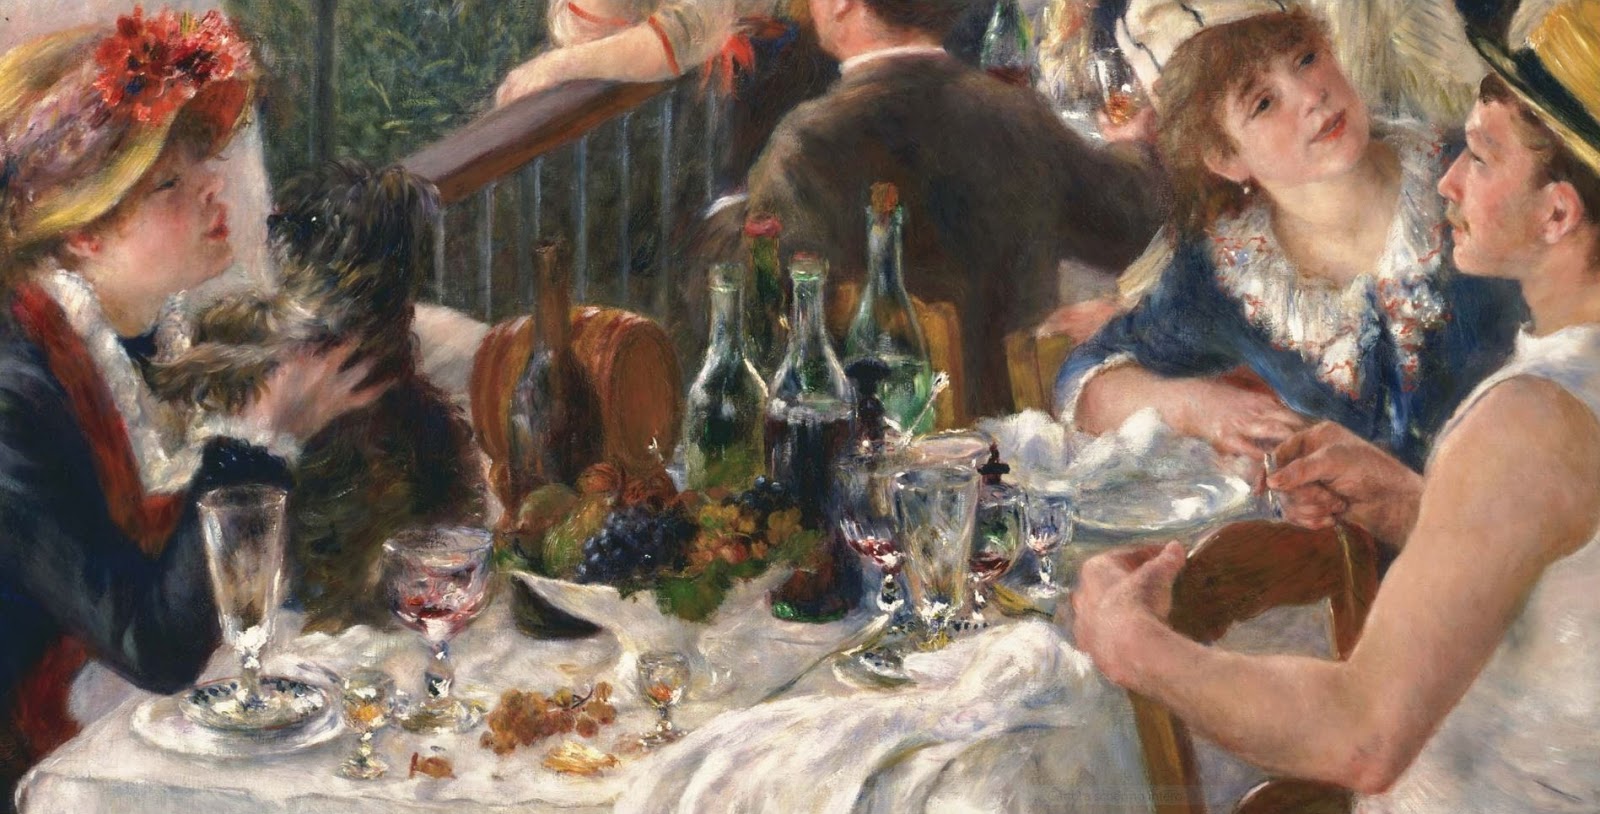 Pierre+Auguste+Renoir-1841-1-19 (556).JPG